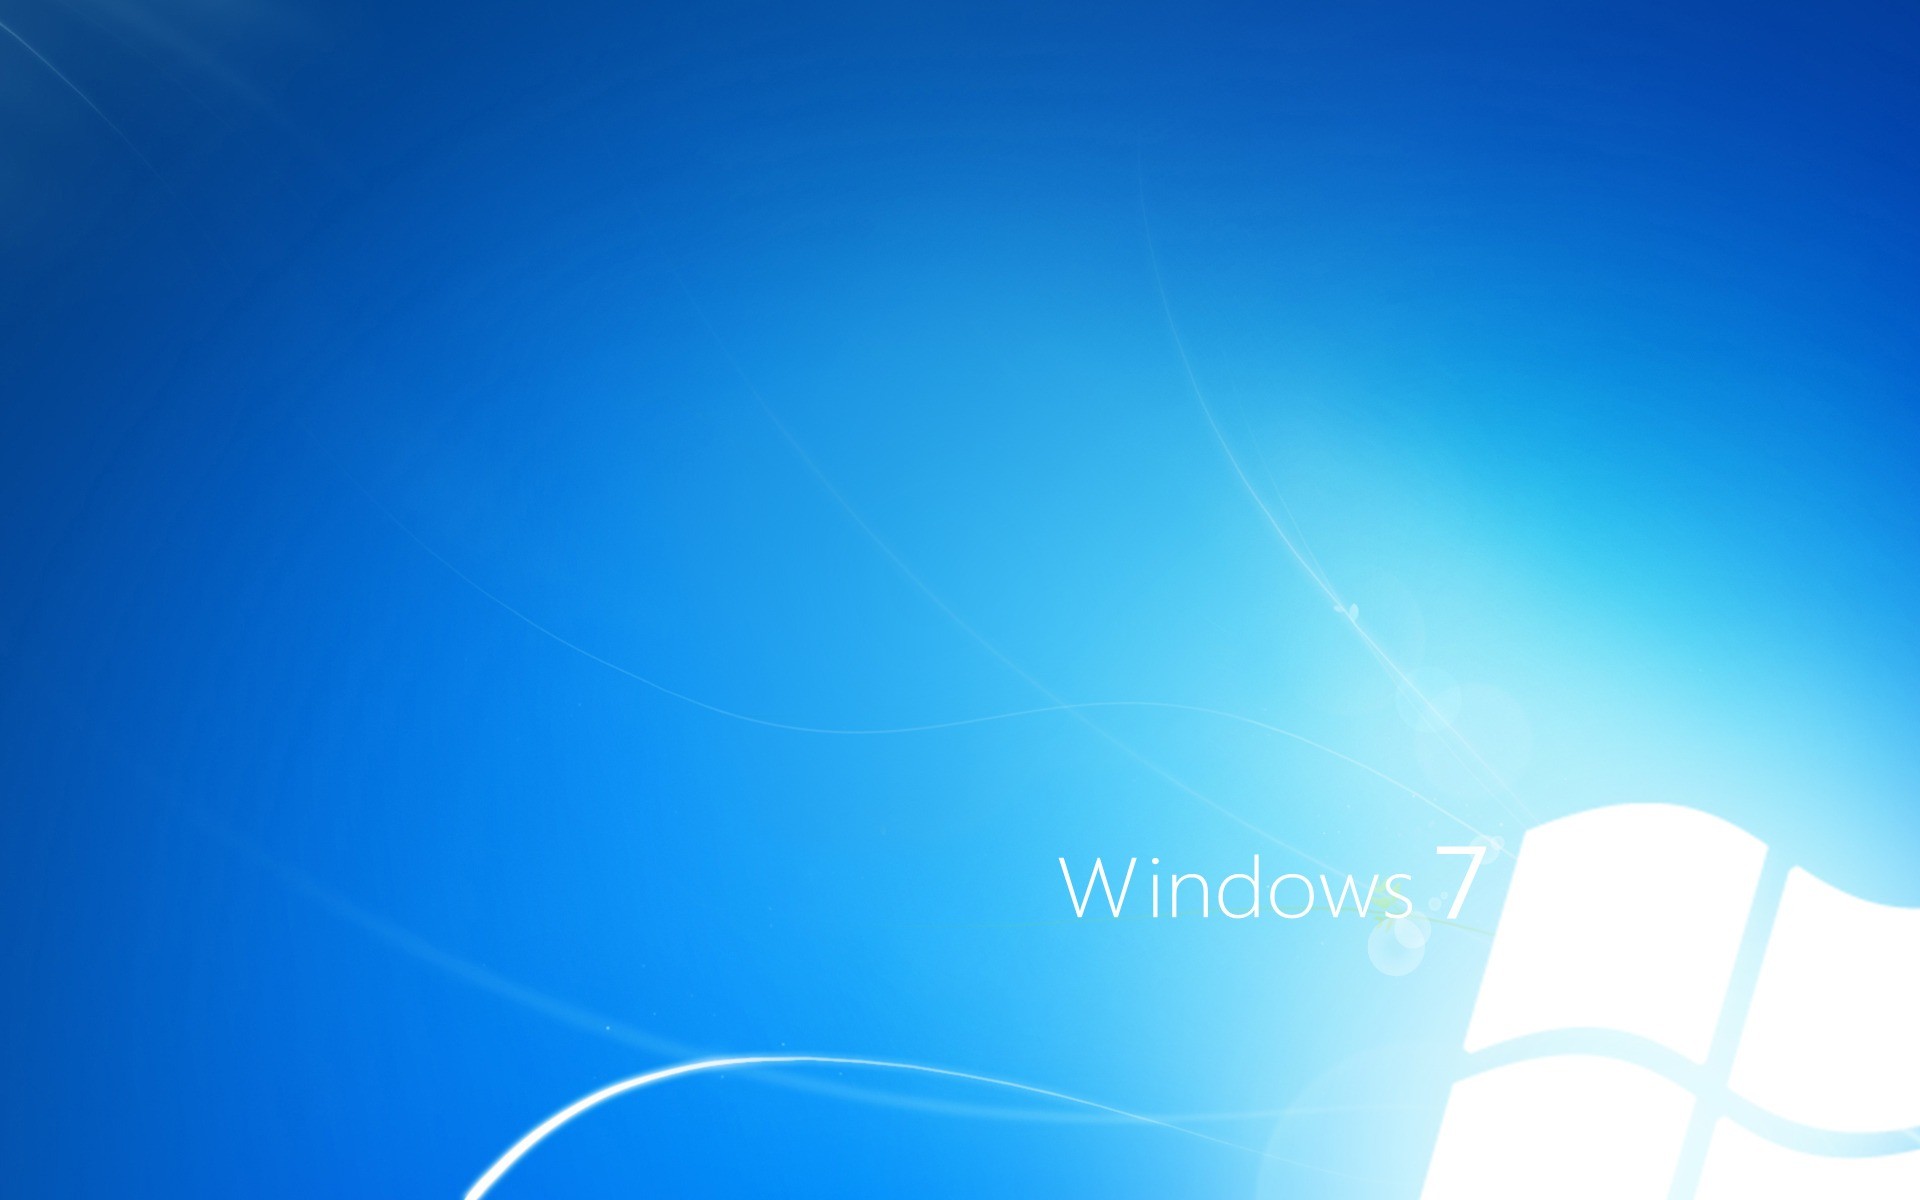 Windows 7 Light Blue Wallpaper Windows Seven Computers